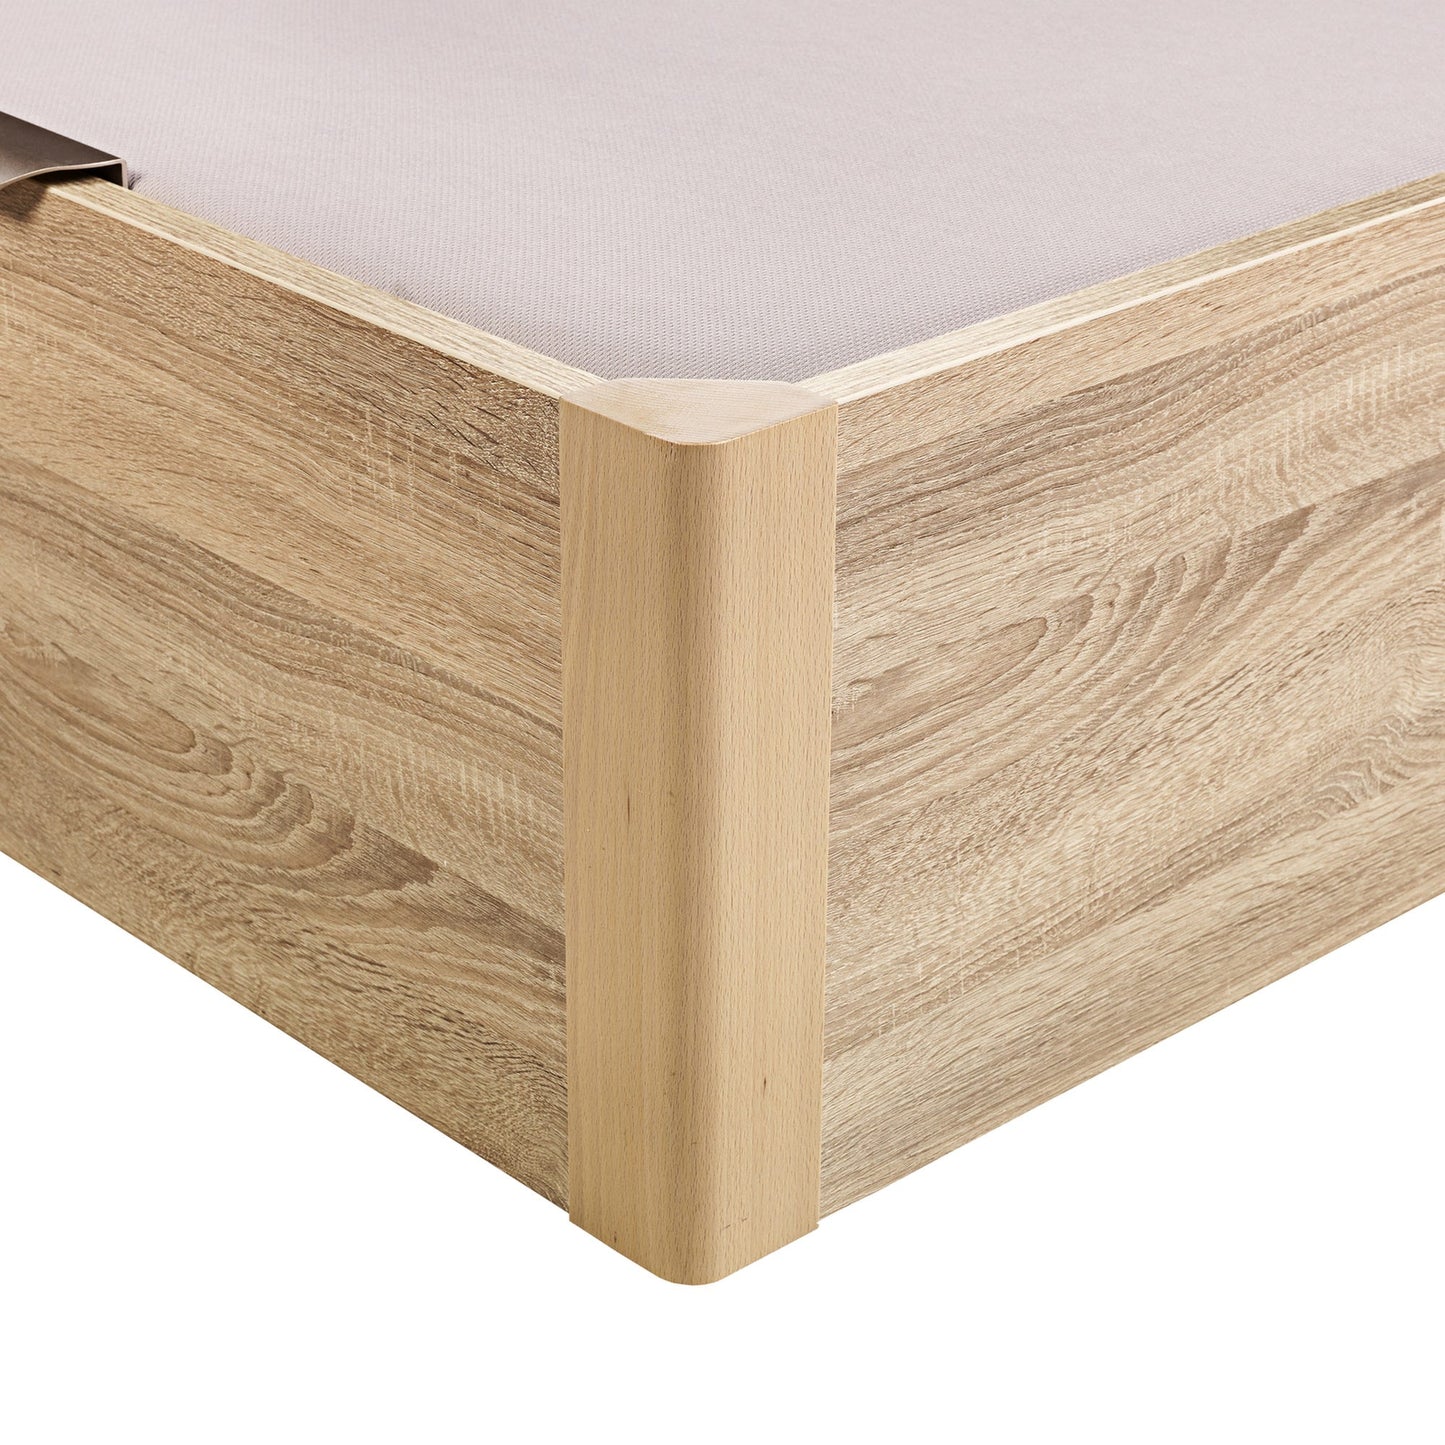 Canapé abatible de madera juvenil de color natural - DESIGN JUV - 105x190